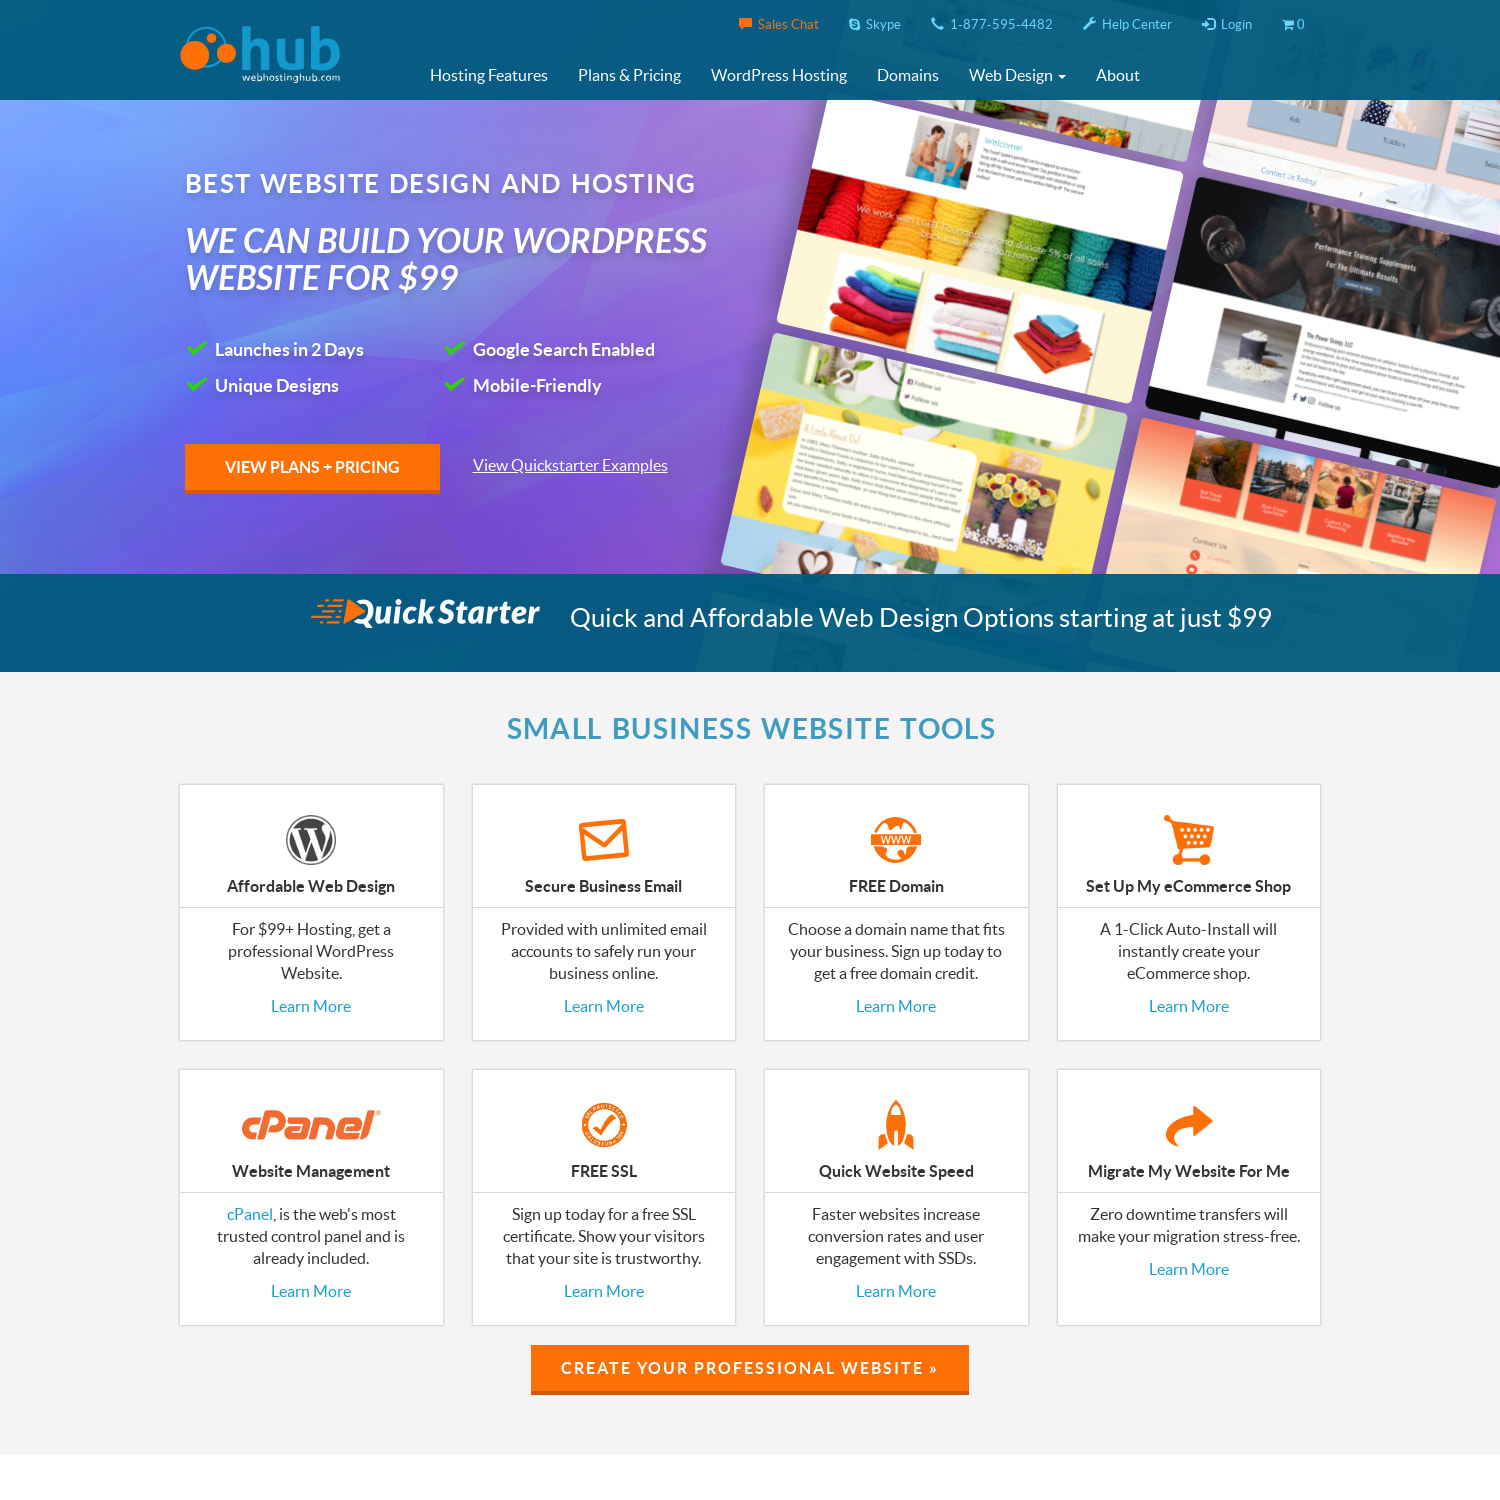 Best Website Design and Hosting Services